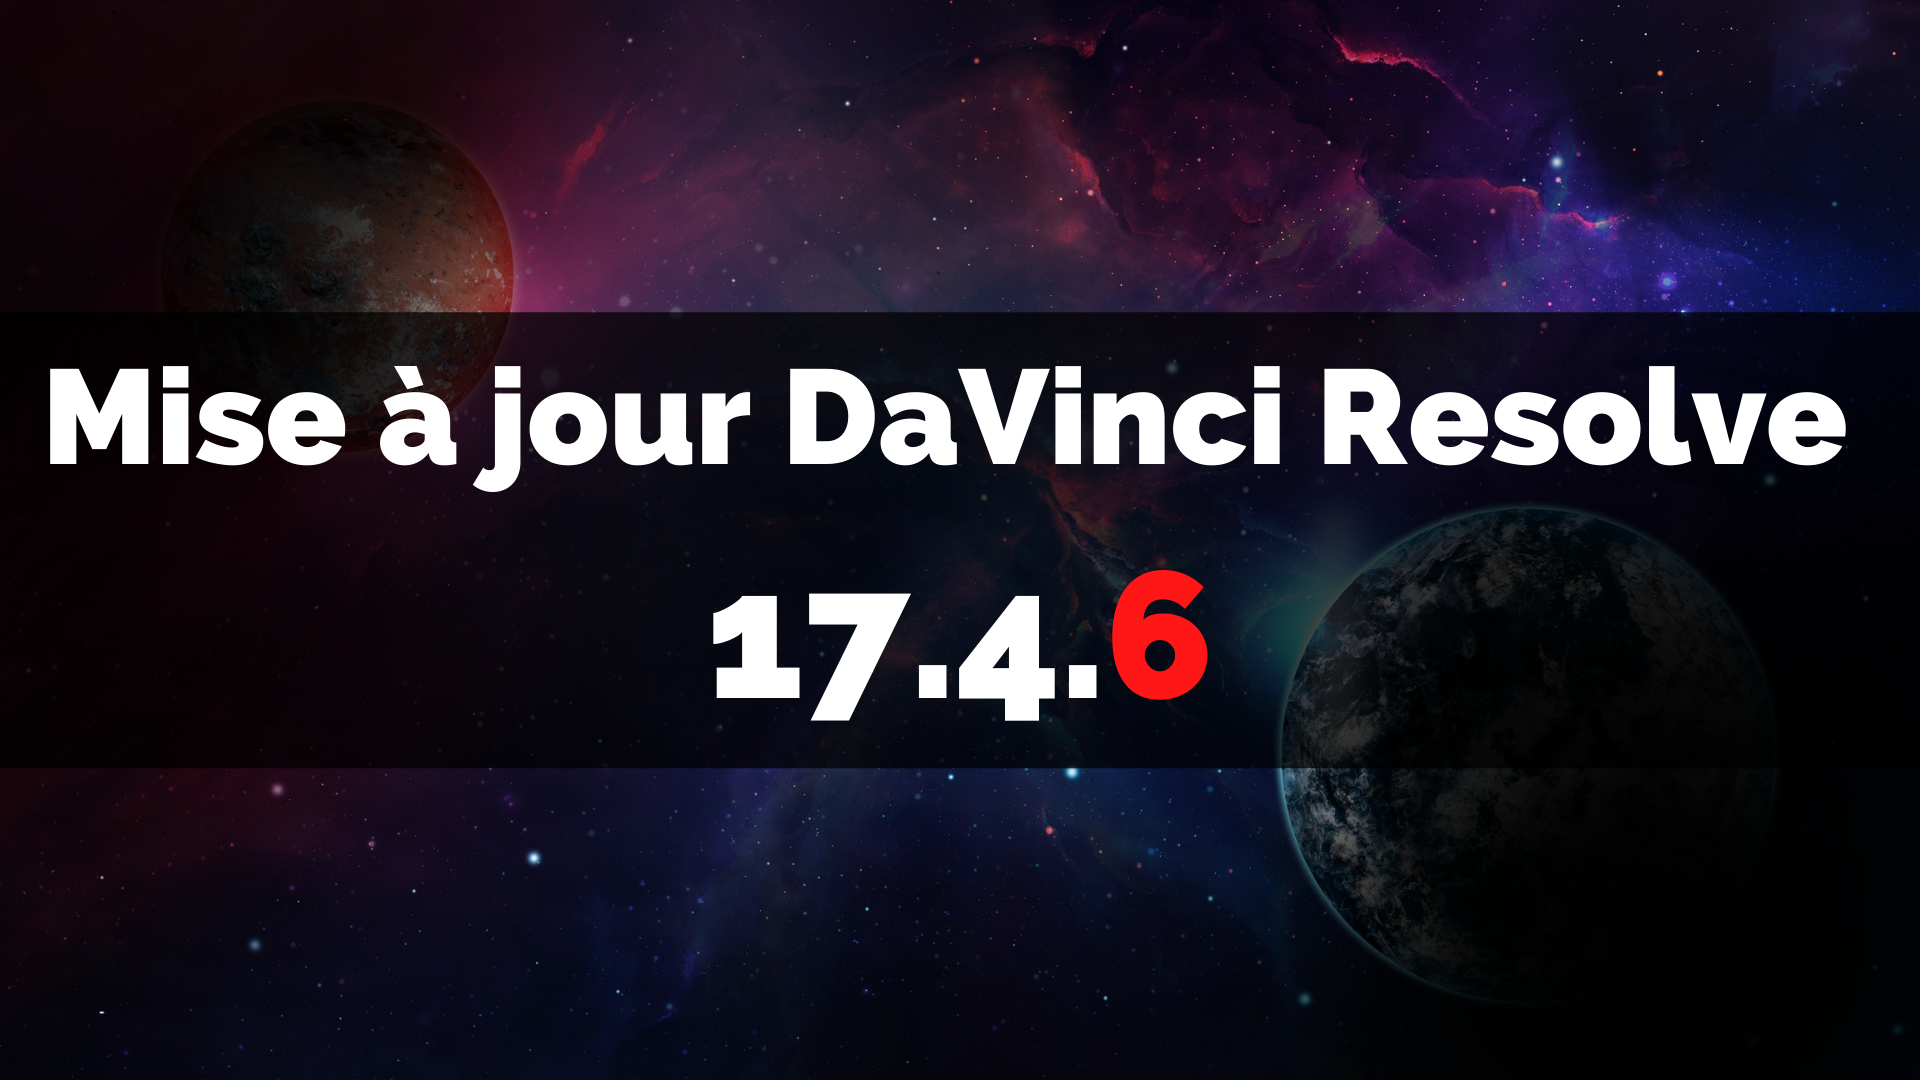 Davinci resolve 17.4.6